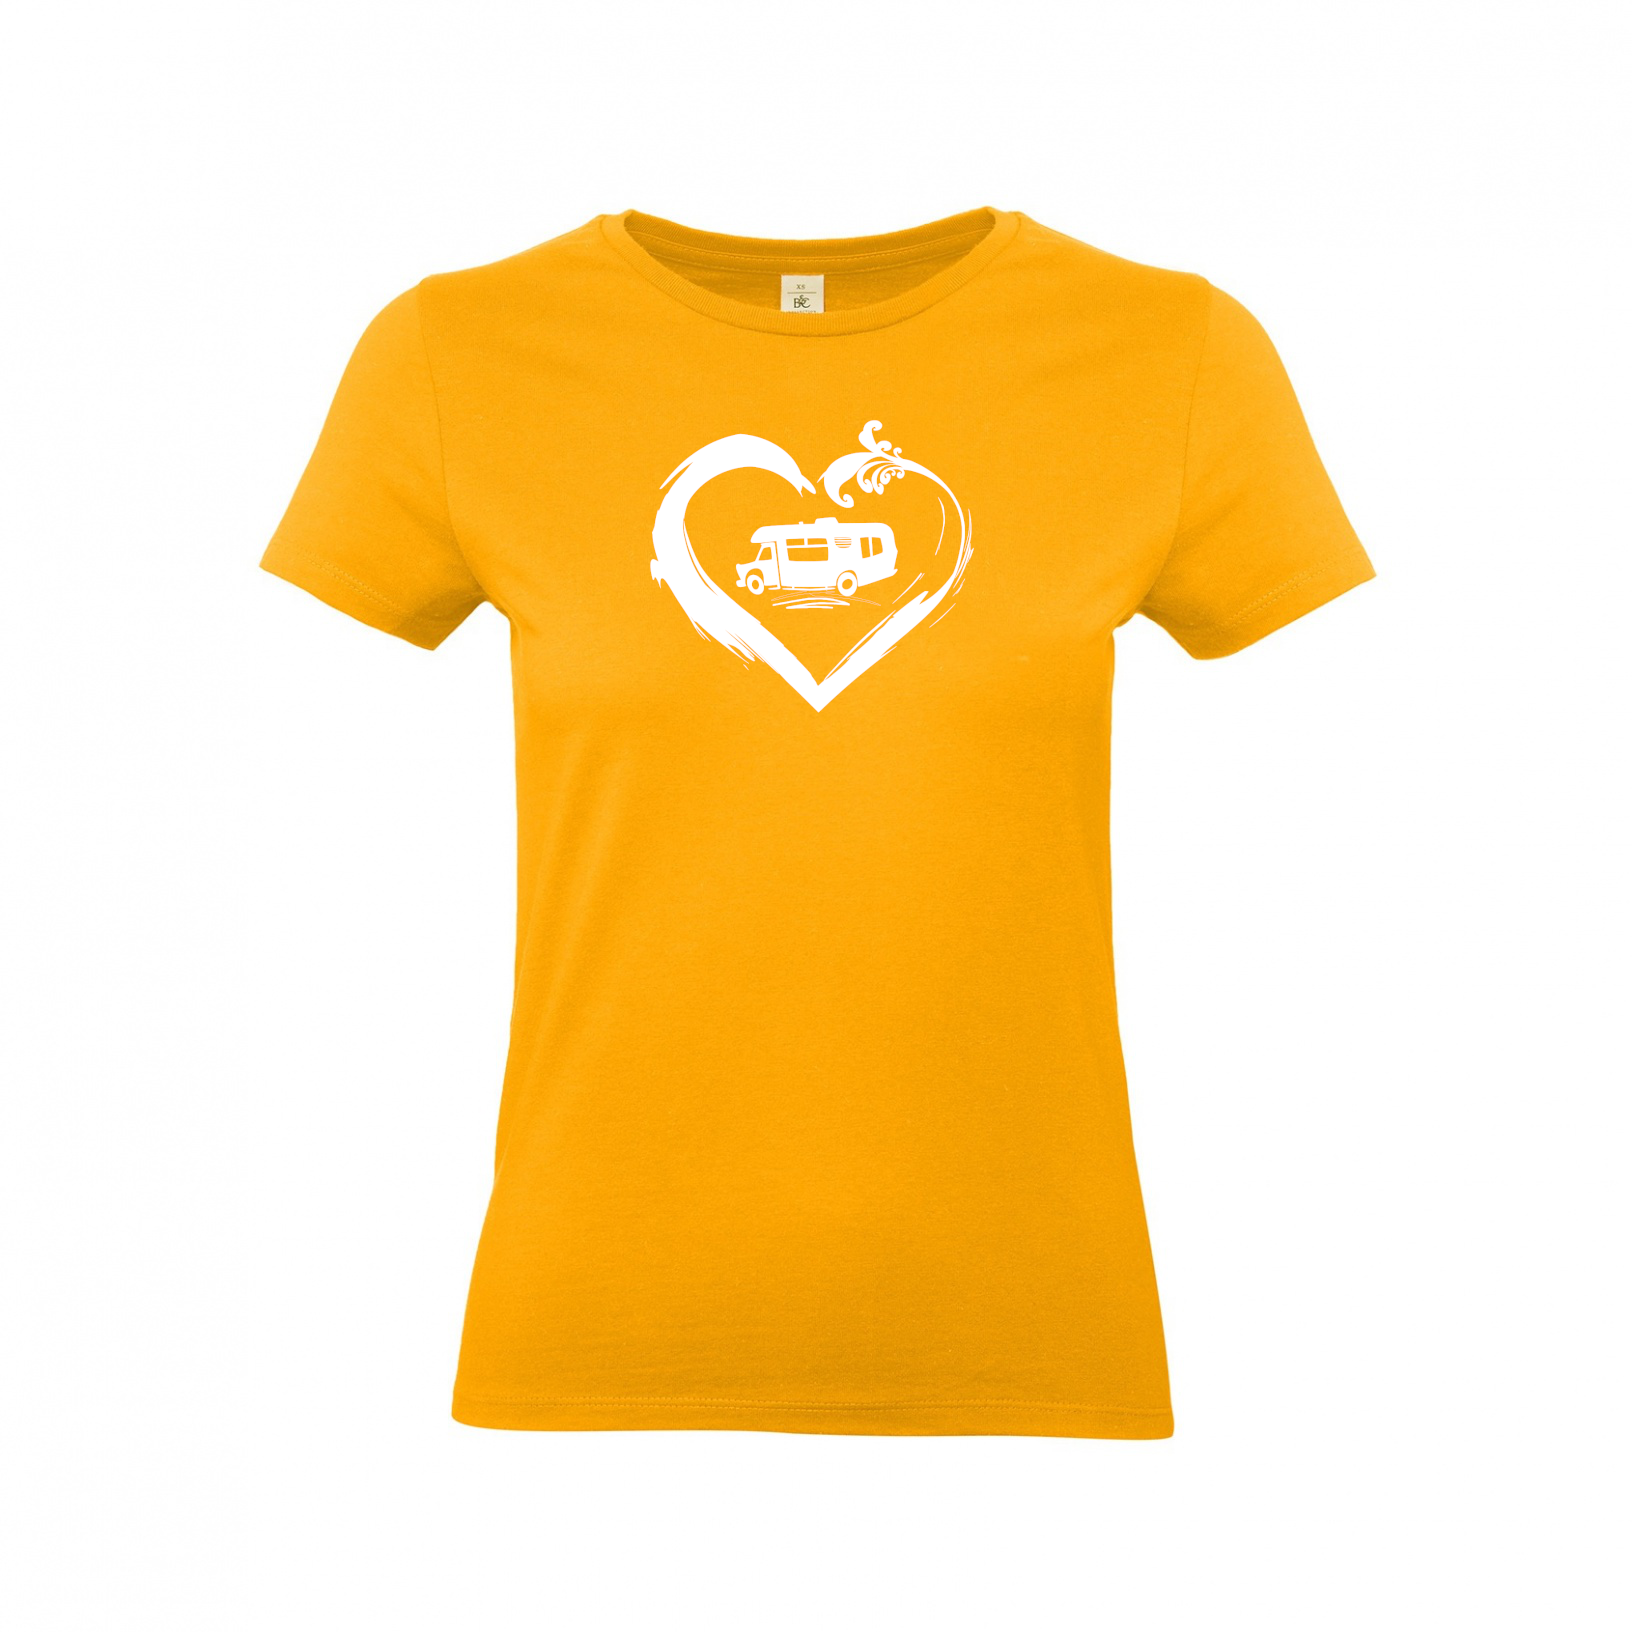 Wohnmobil Camperin mit Herz - Camping T-Shirt für Frauen